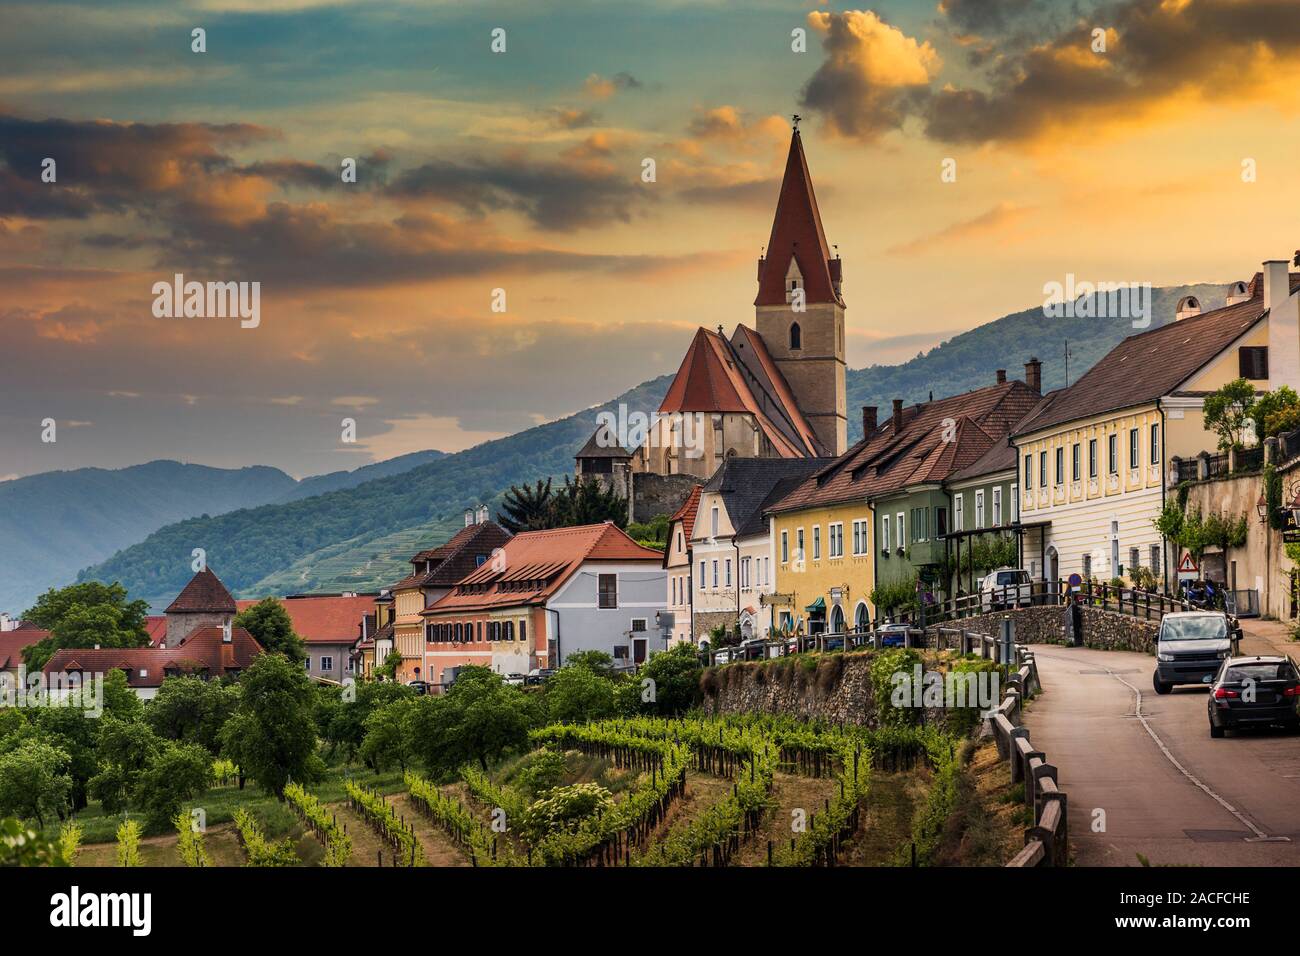 Church of Weissenkirchen in der Wachau, a town in the district of Krems-Land, Wachau Valley, Austria. Stock Photo